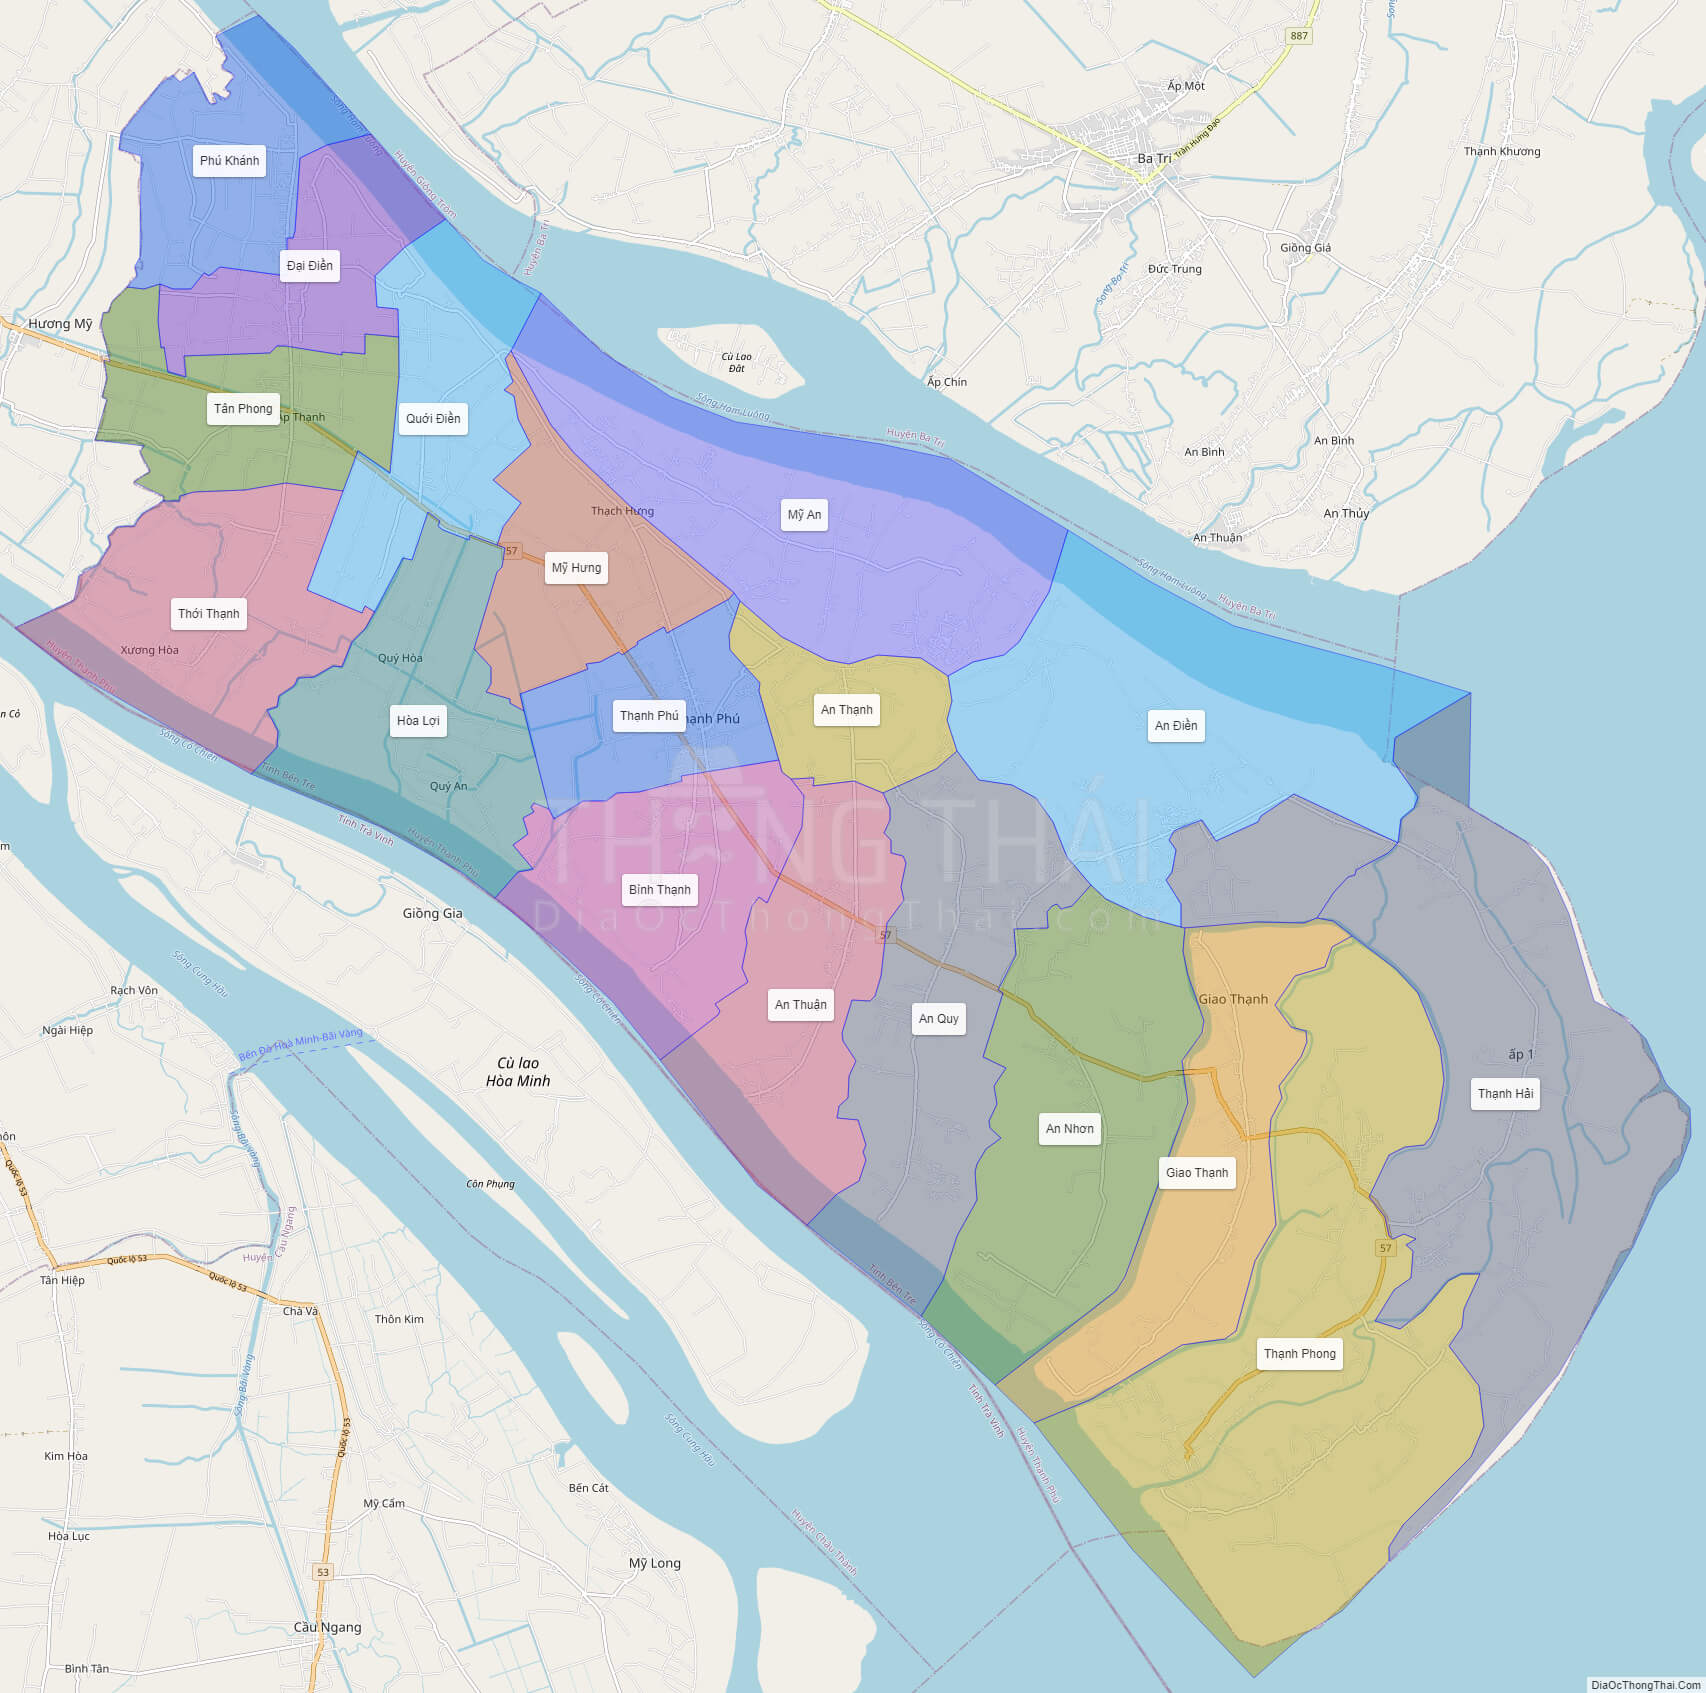 Tổng hợp bản đồ huyện thạnh phú tỉnh bến tre từ nhiều nguồn đáng tin cậy